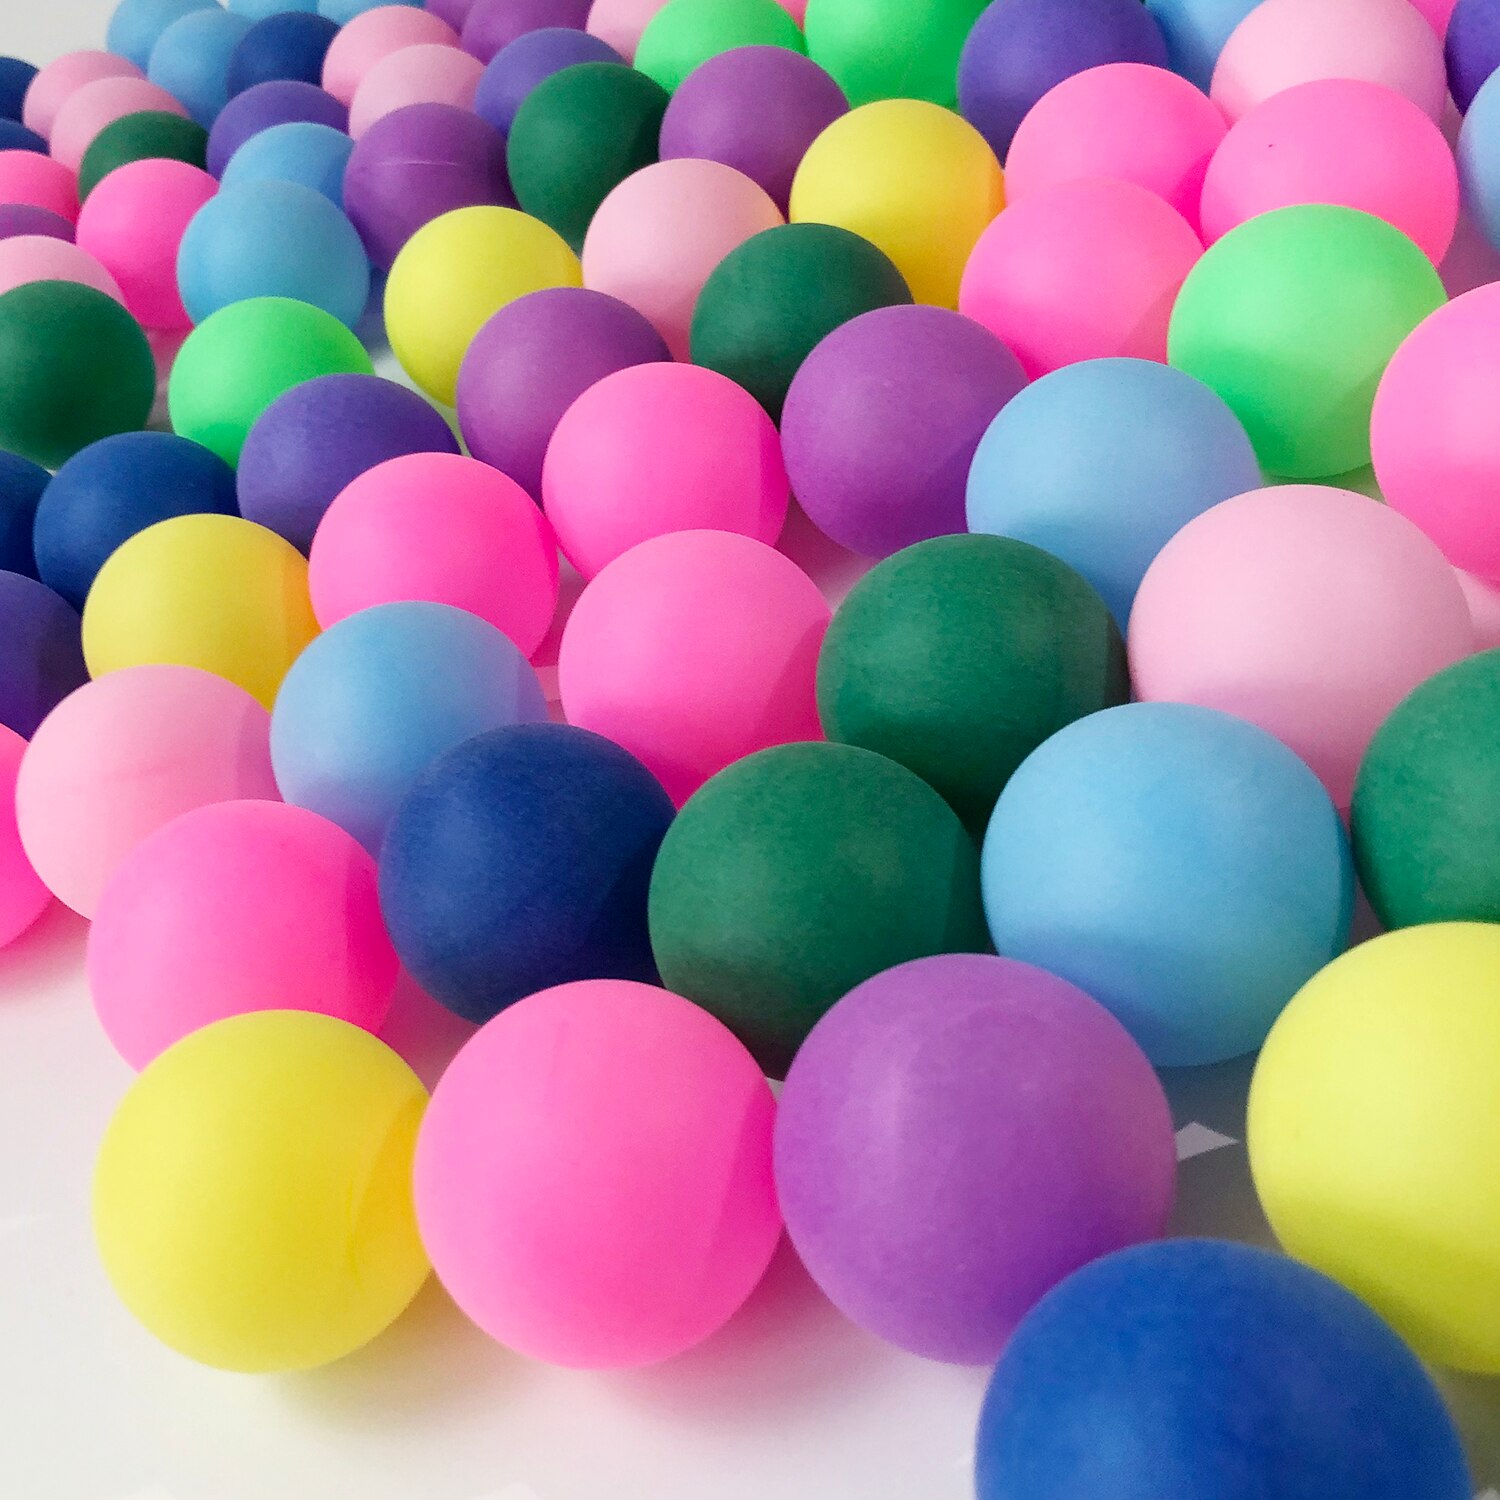 10 stk farvede ping pong bolde 40mm 2.4g underholdning bordtennis bolde blandede farver til lotteri spil og aktivitet kattelegetøj